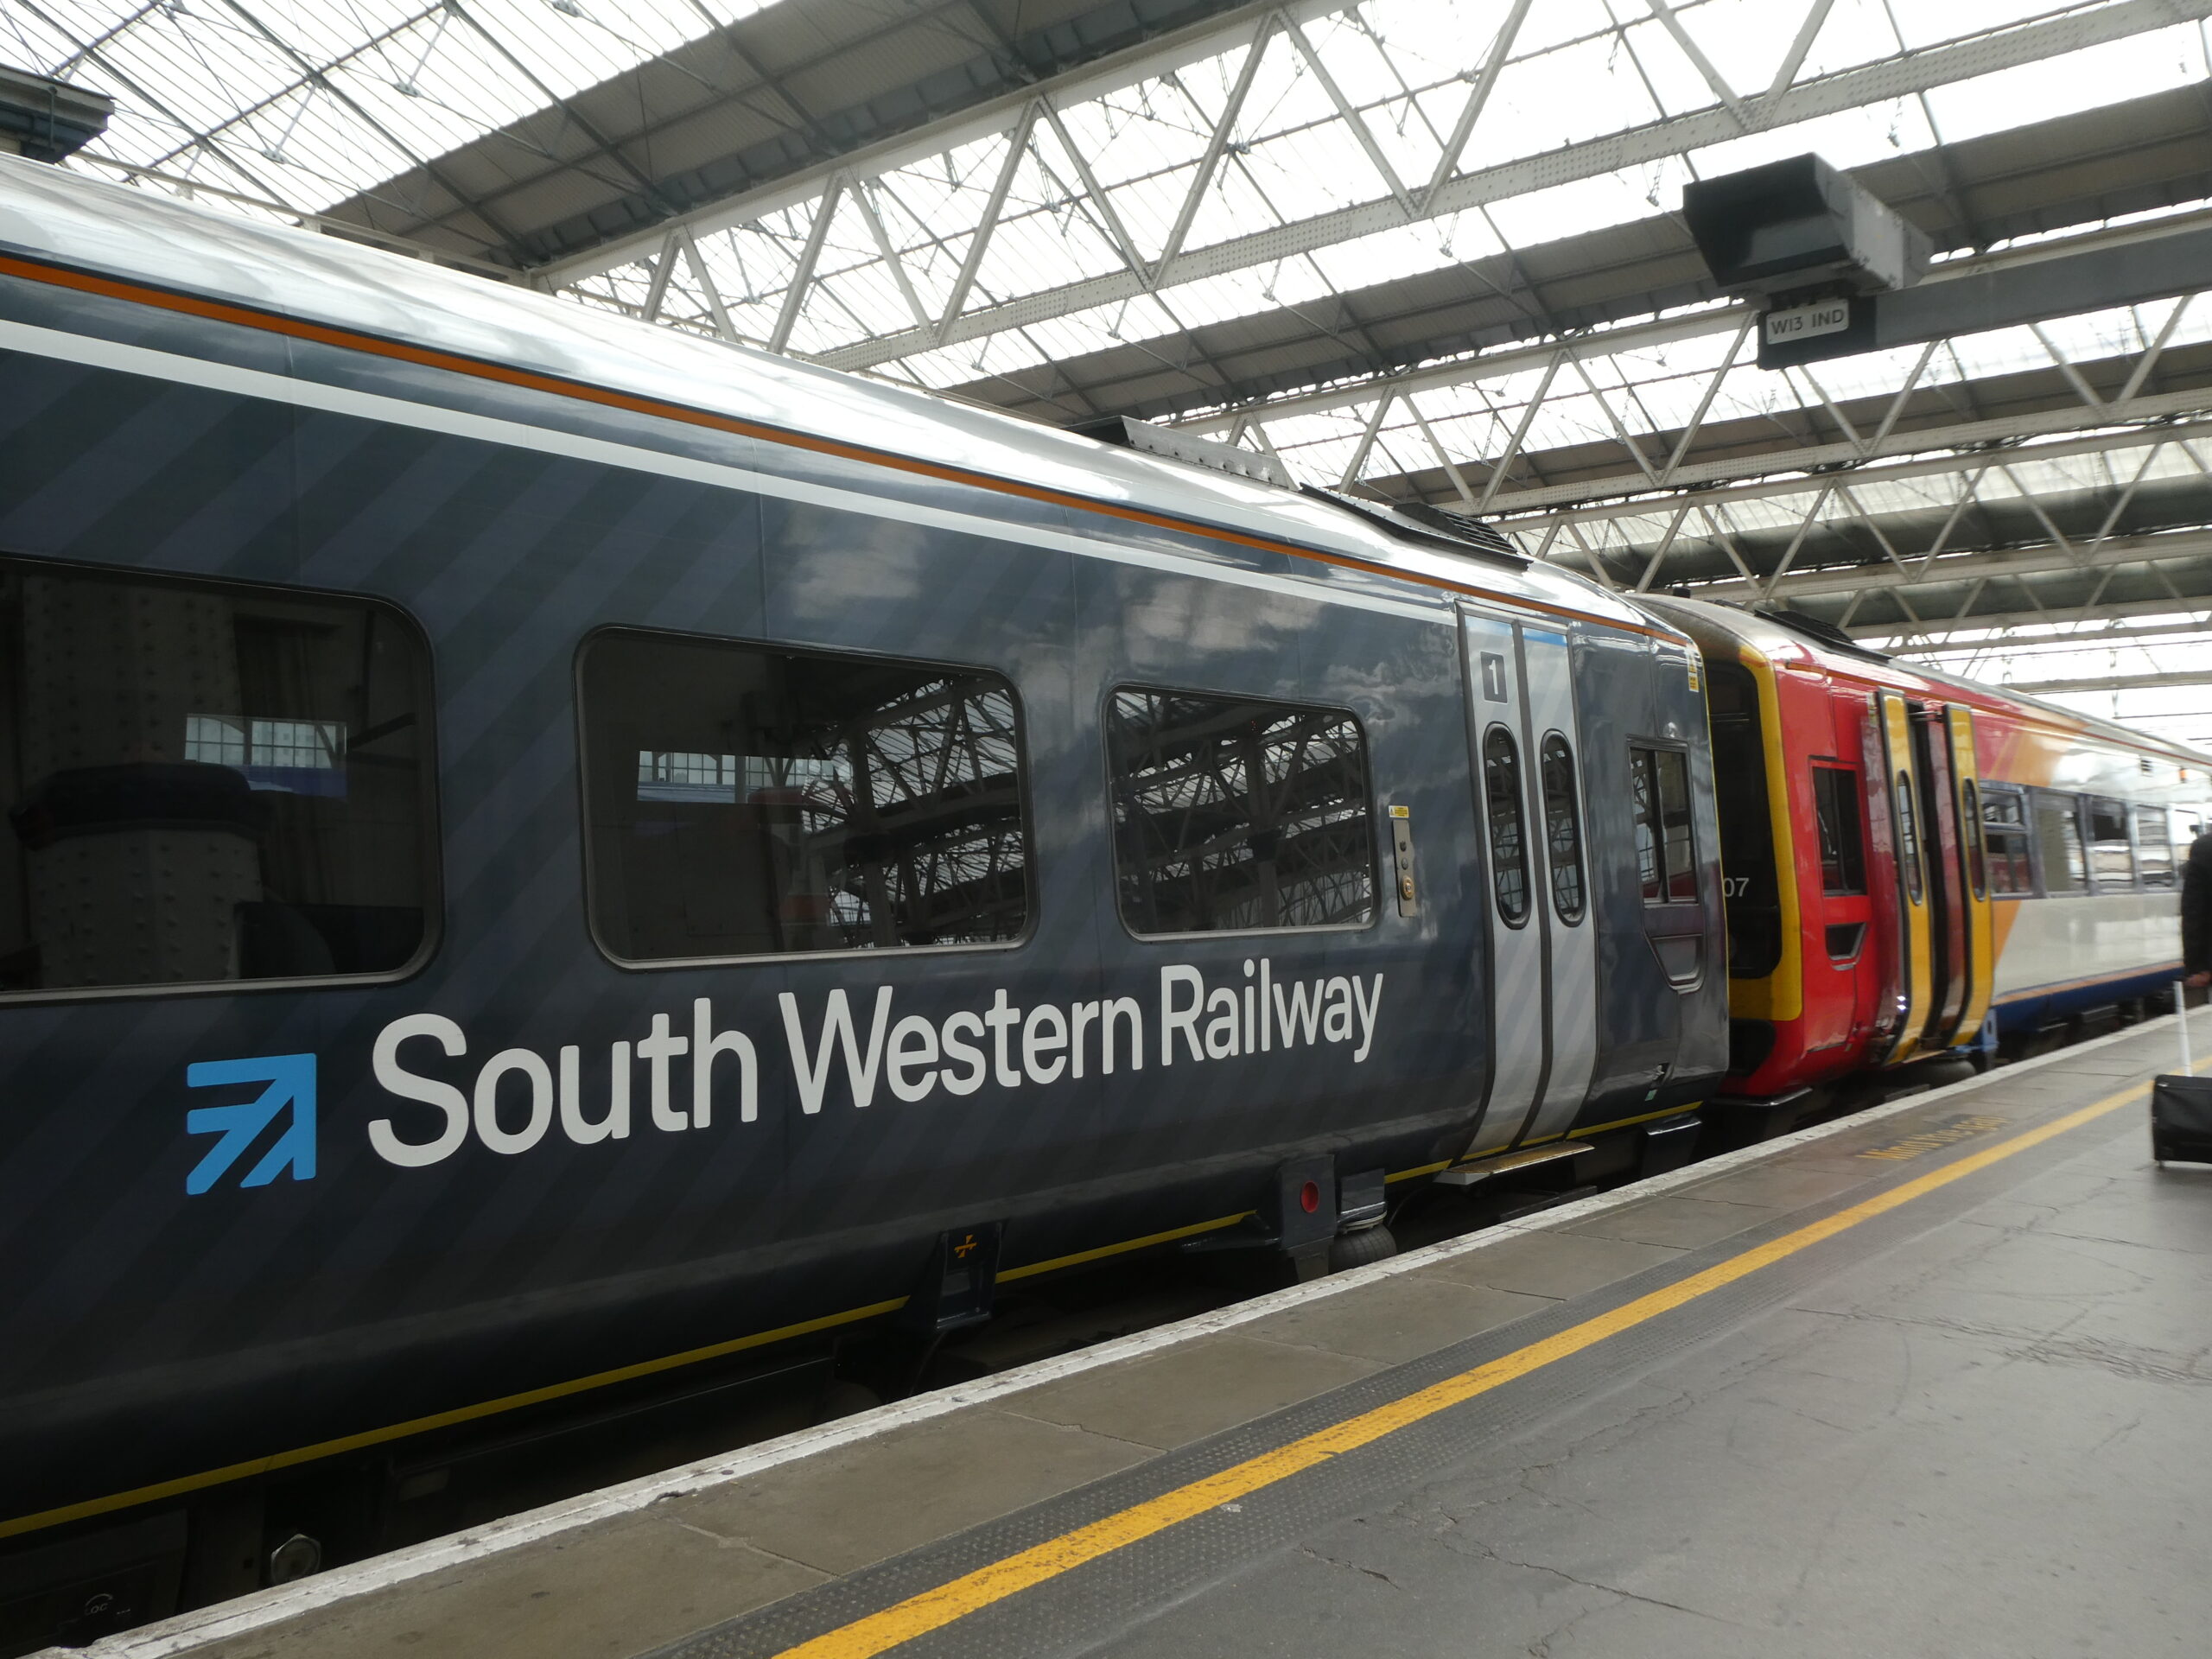 South Western Railway train